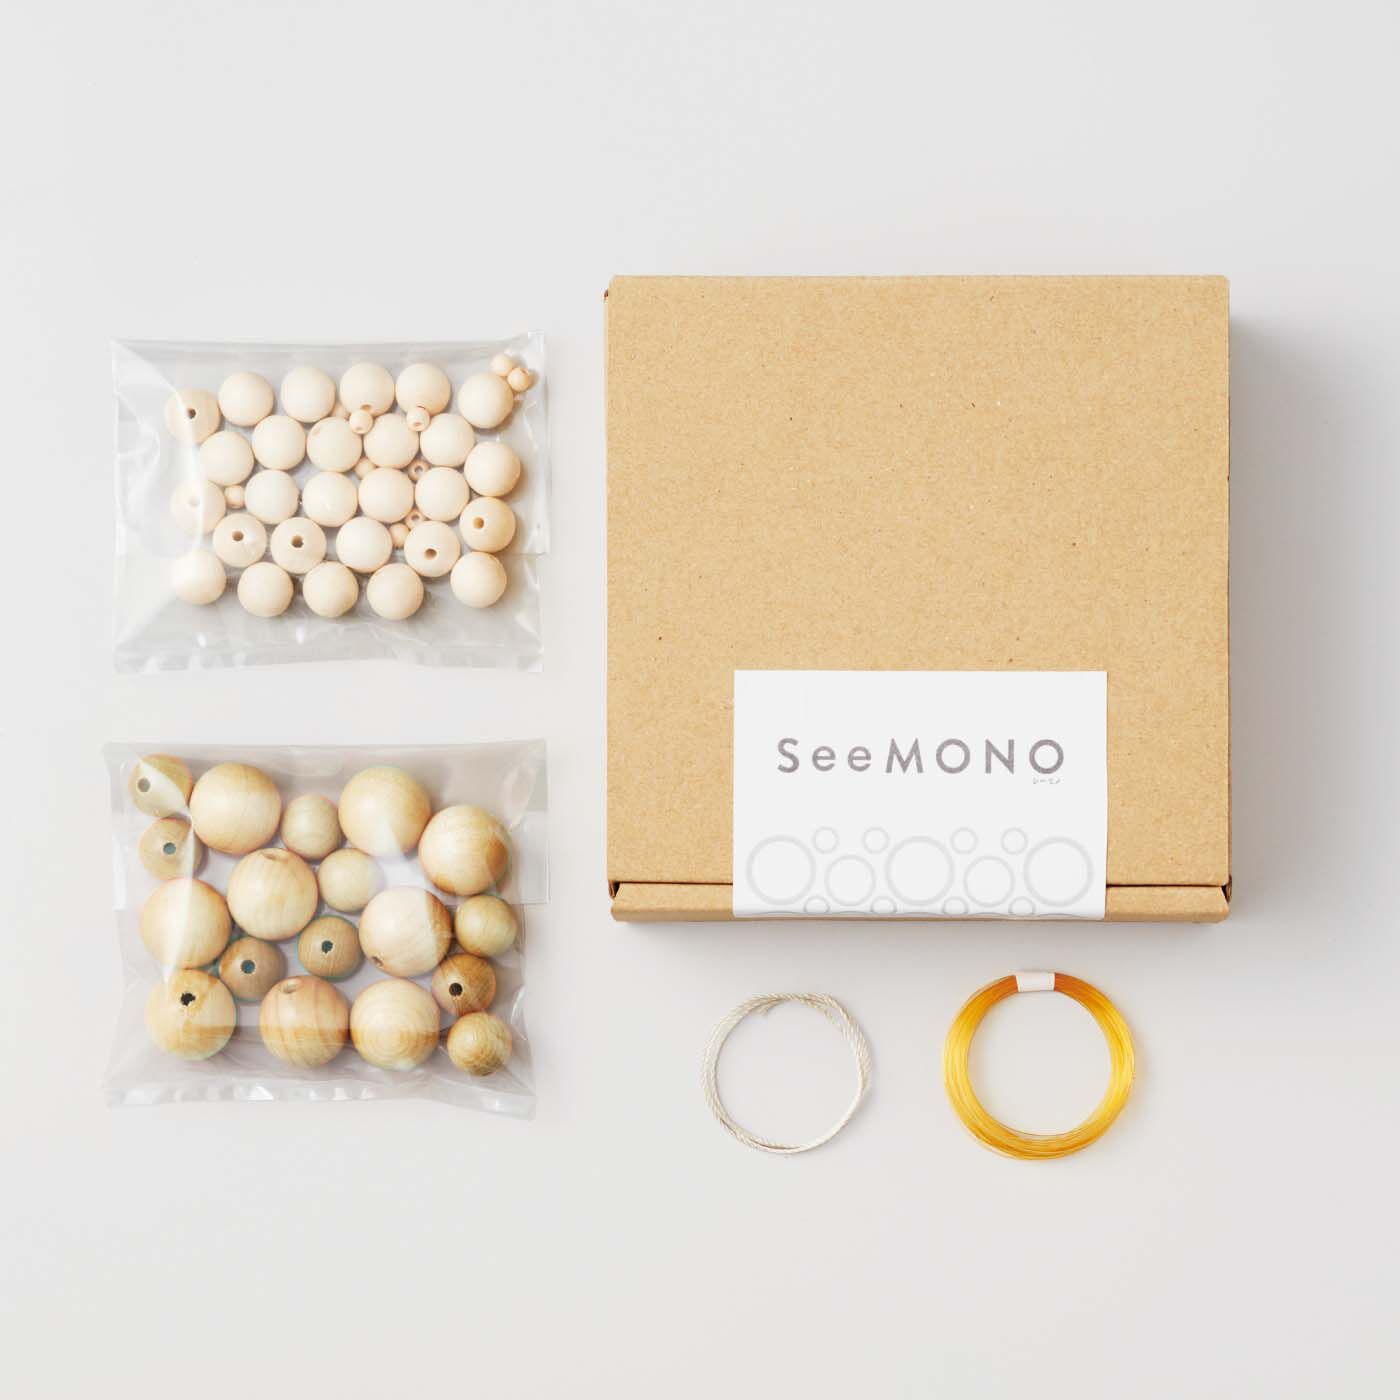 SeeMONO|ウッドビーズを連ねて組んで作る インテリア雑貨キットの会|1回のお届けセット例です。